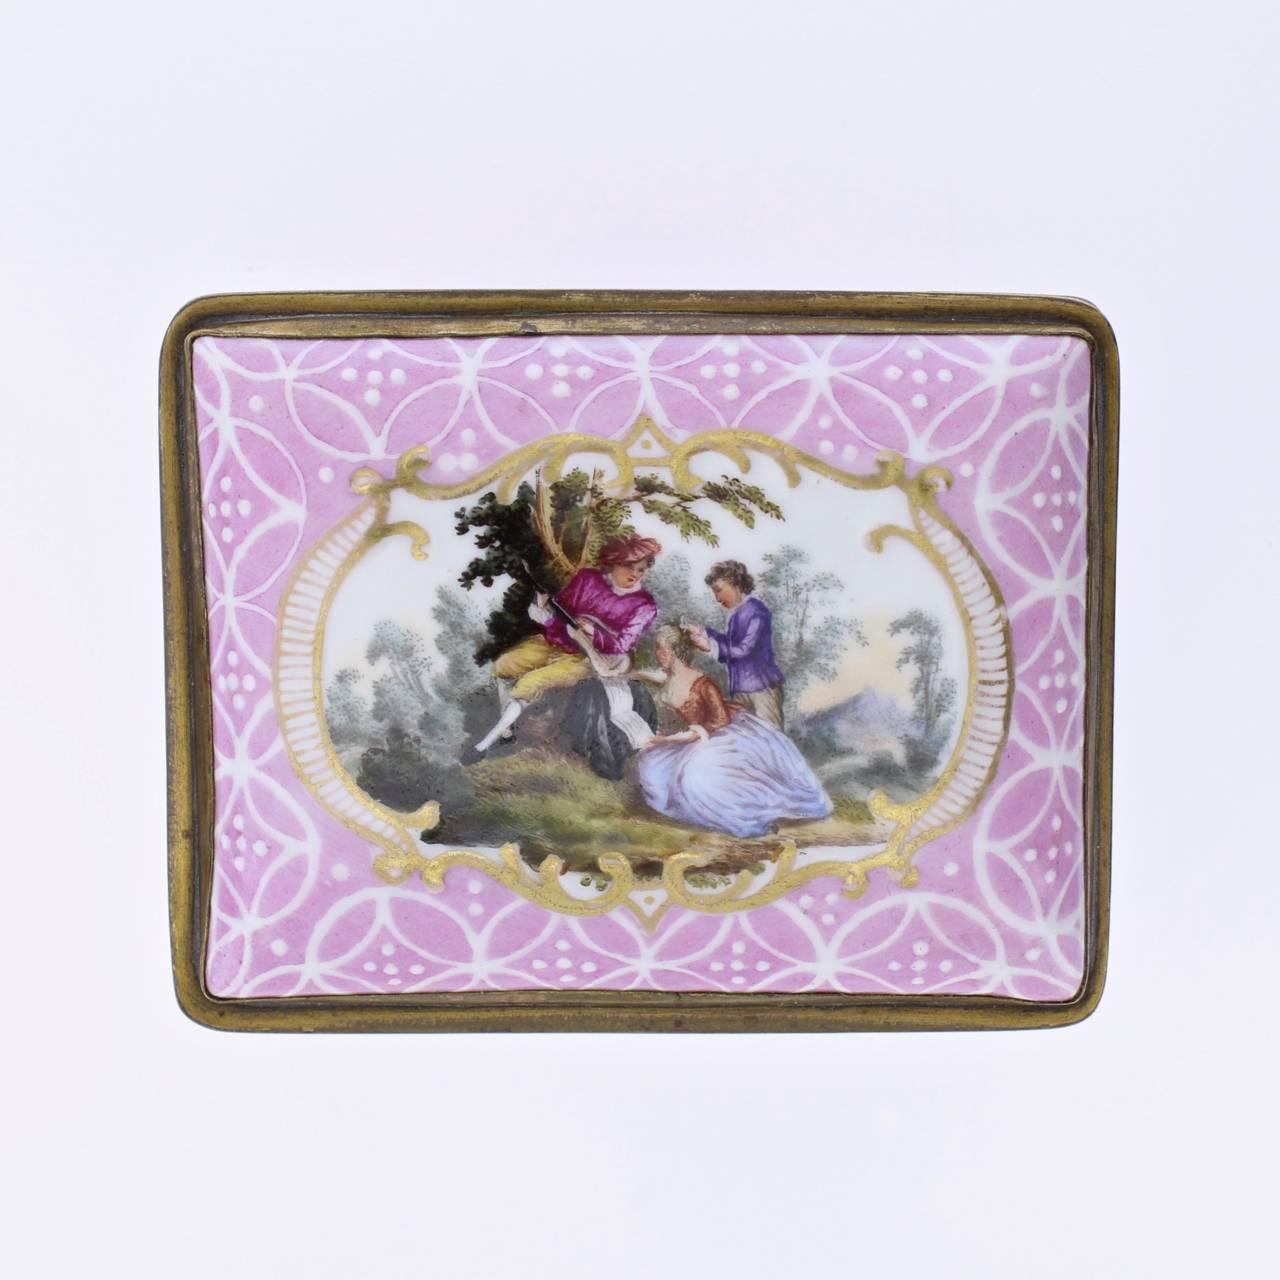 Eine schöne antike englische Staffordshire- oder Battersea-Emaille-Tischschnupftabakdose. 

Mit rosafarbenem Grund und durchgehendem weißem Emaille-Gitterdekor. Jede Seite hat eine Kartusche mit klassischen Liebesszenen. Das Innere des Deckels